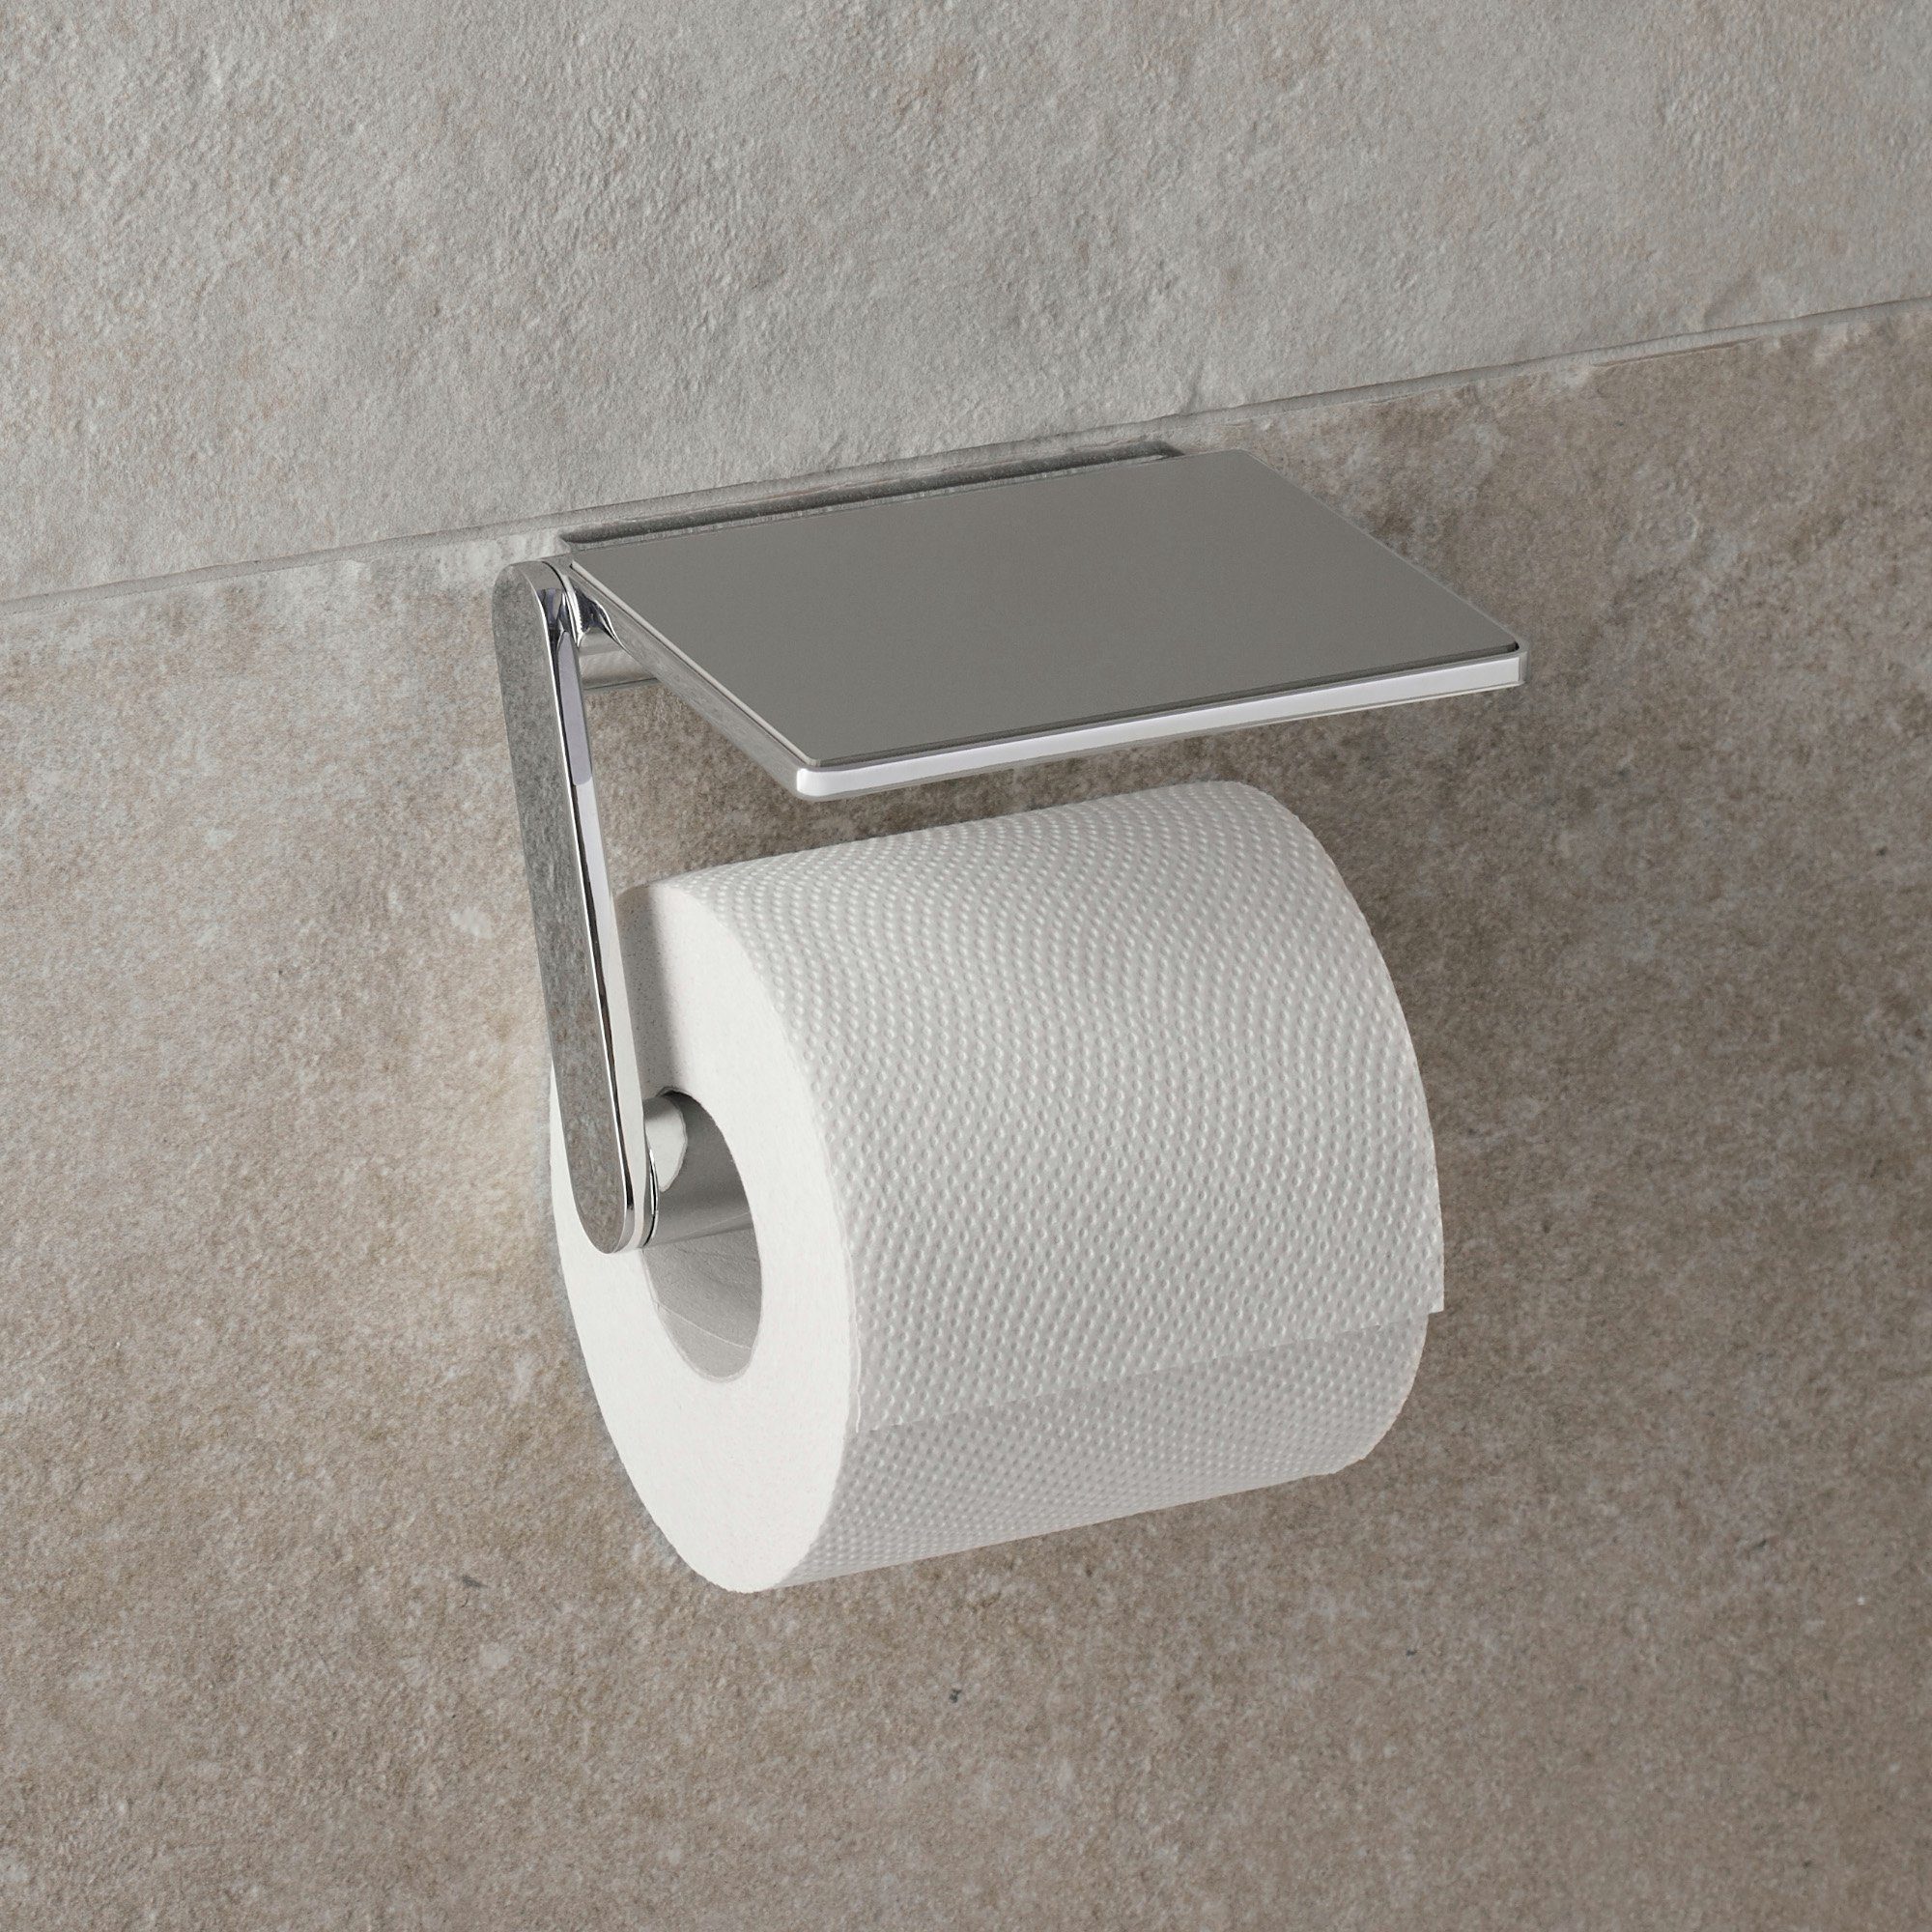 Keuco Reva WC Accessoires Set 3 in 1, schwarz matt, WC-Bürste,  Toilettenpapierhalter mit Ablage, Reserverollenhalter